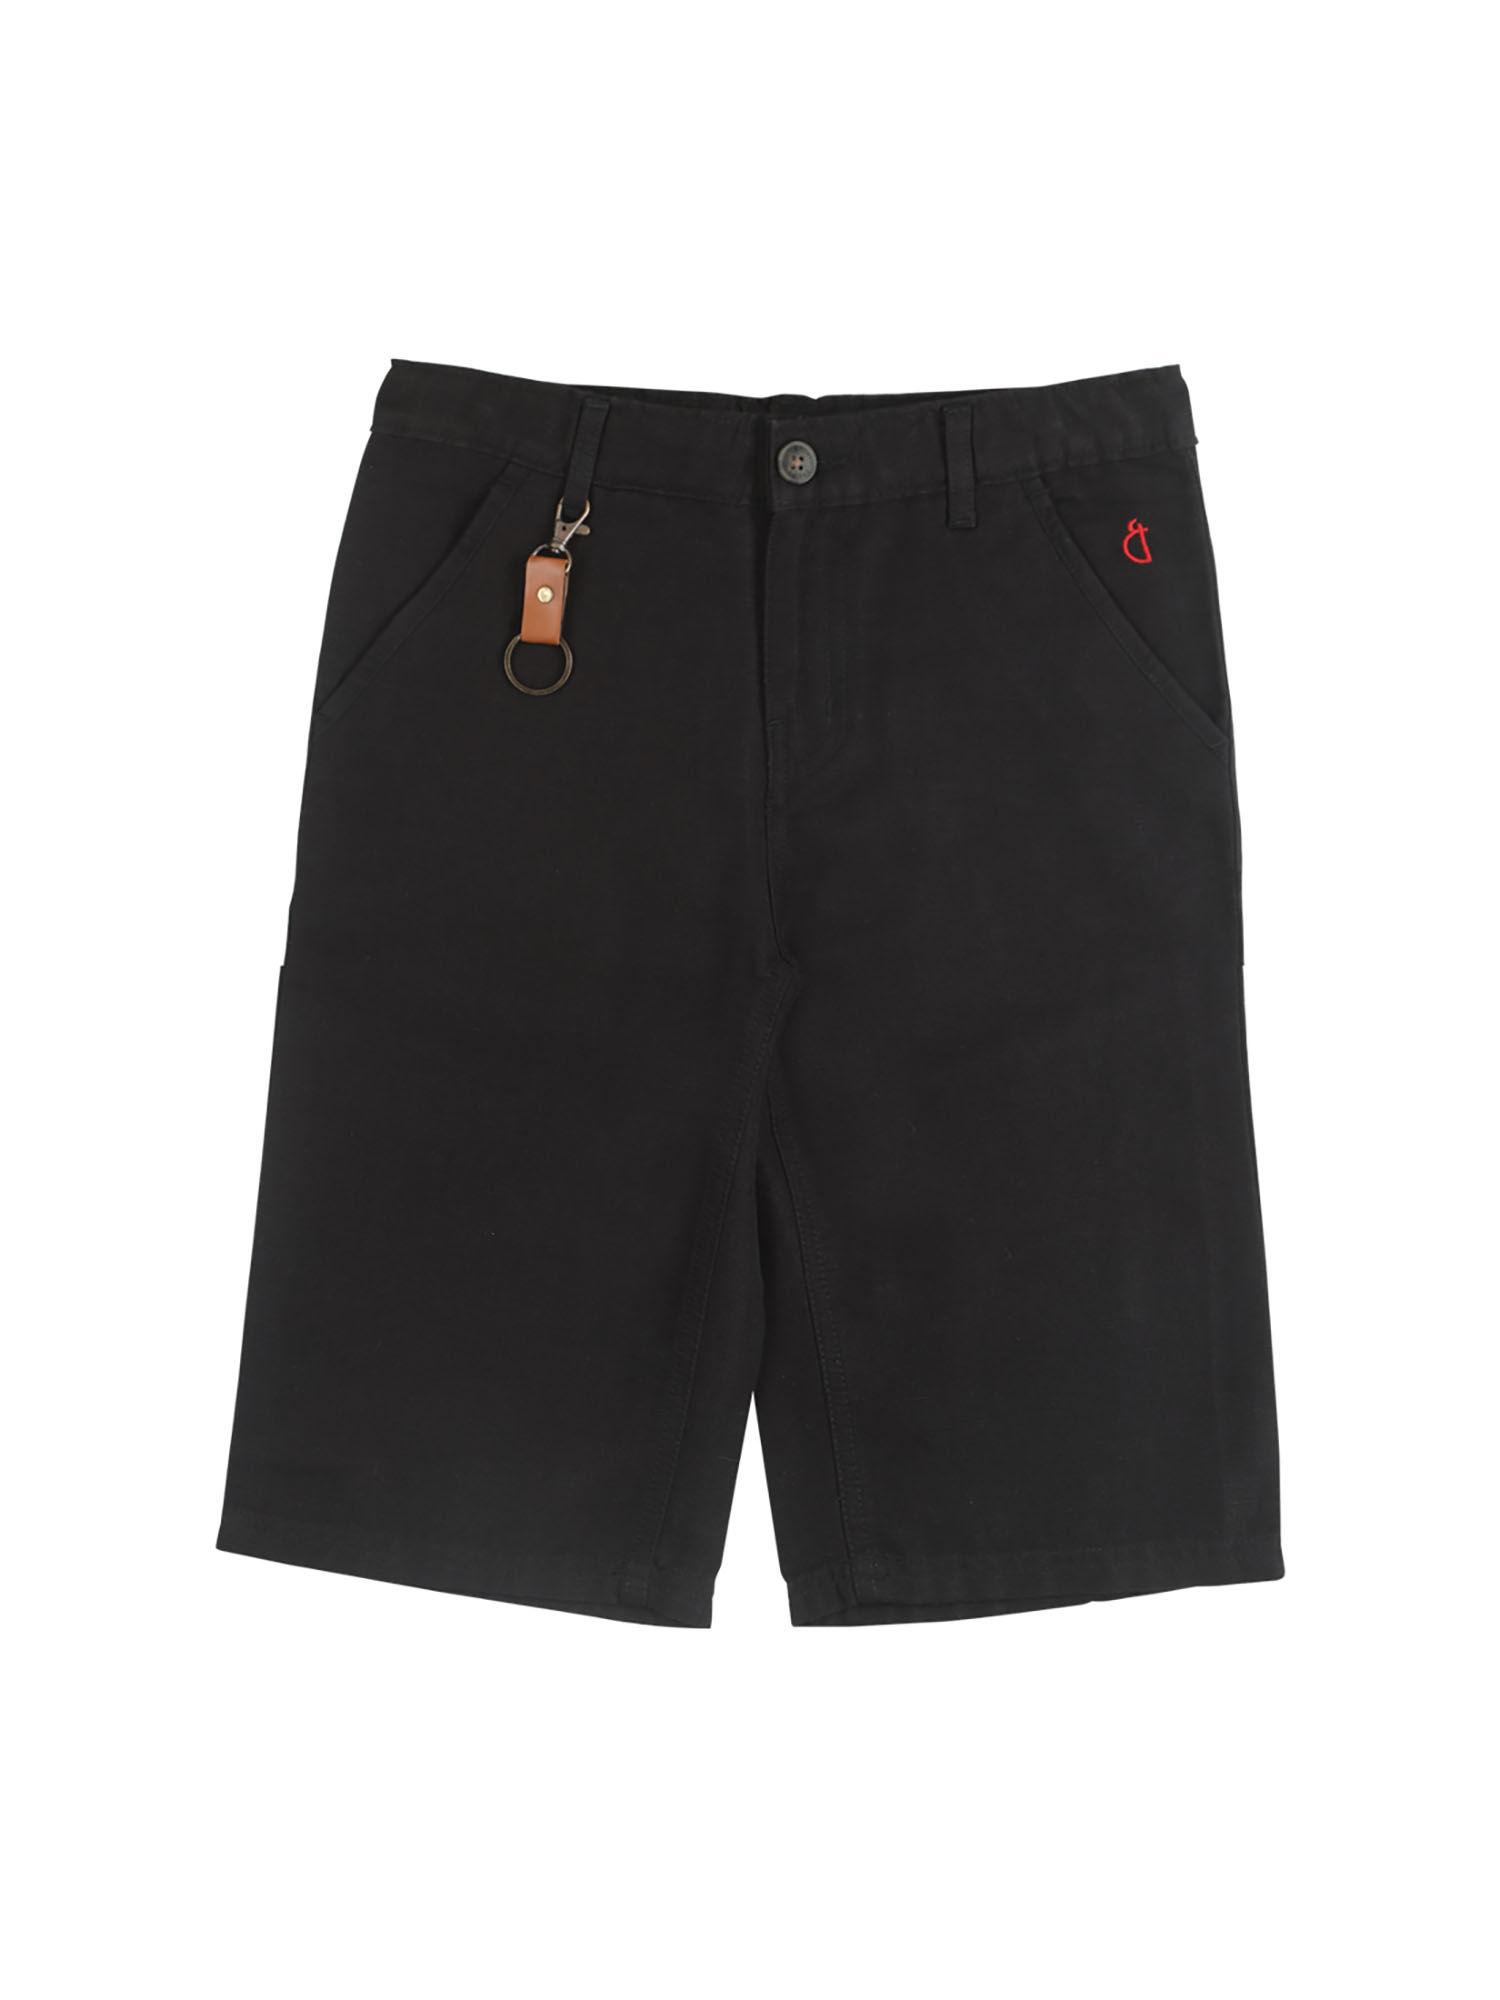 black color solid plain shorts